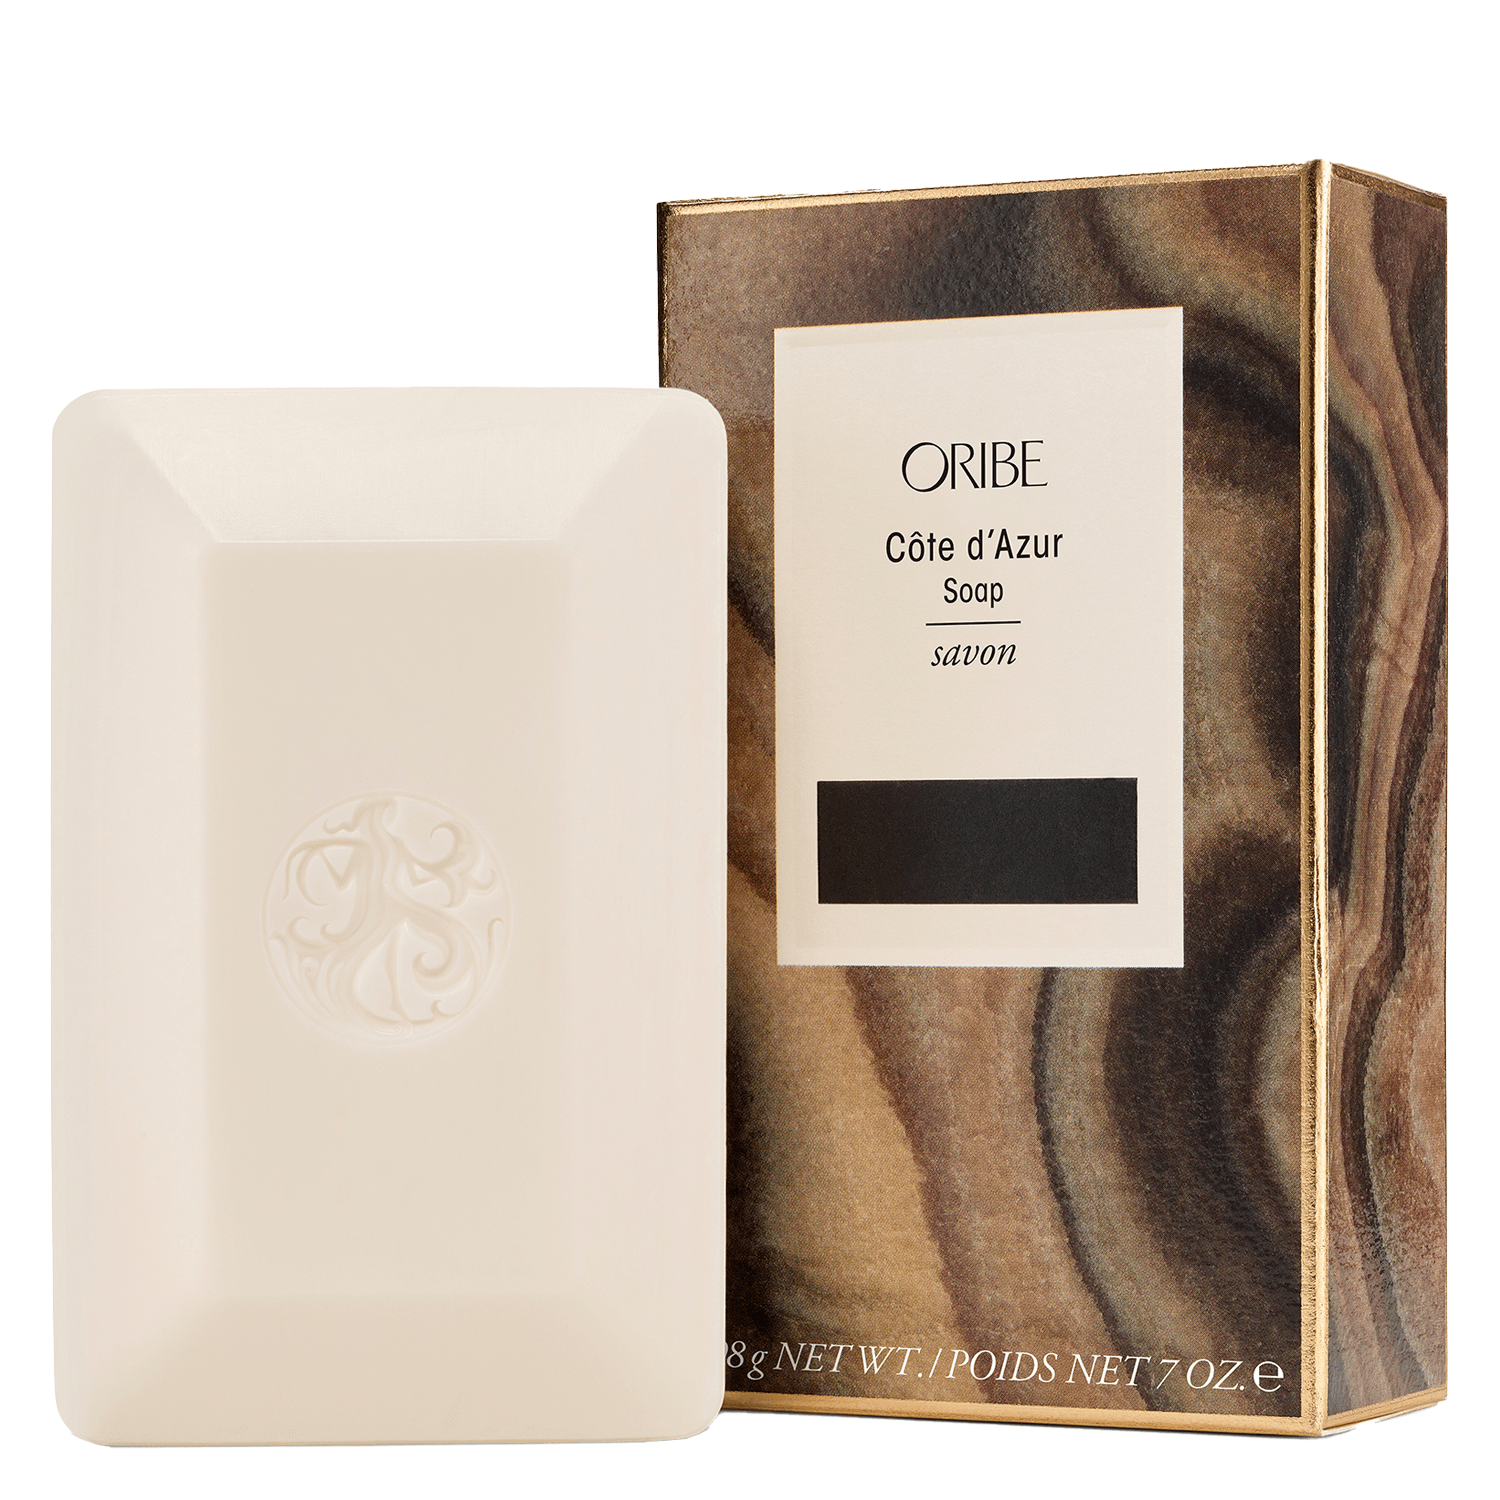 Produktbild von Oribe Skin - Côte d'Azur Bar Soap